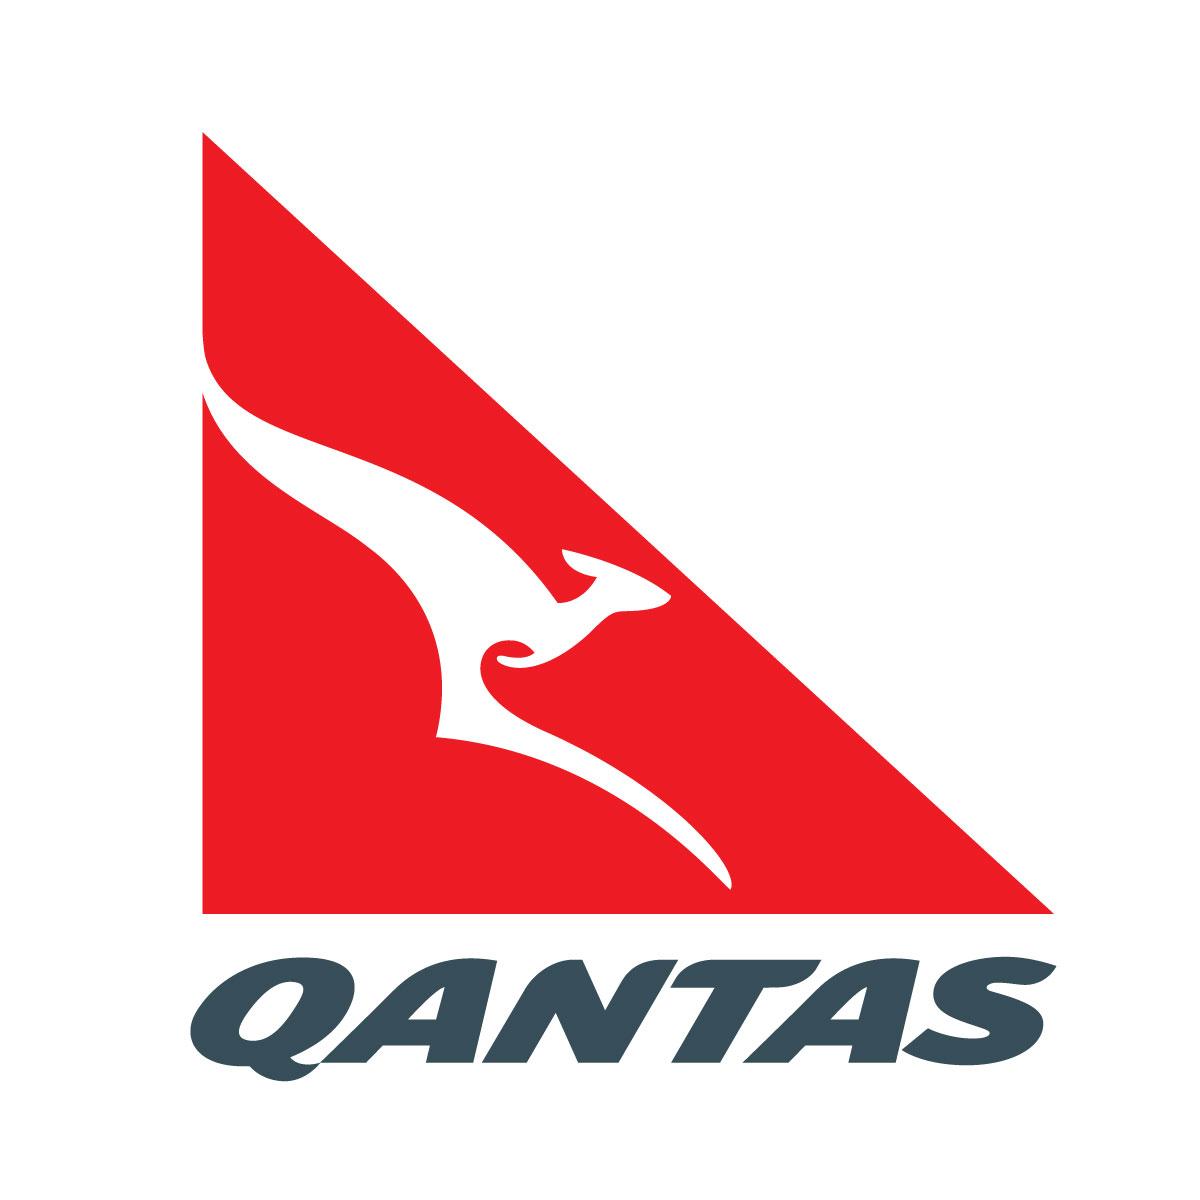 Kangaroo Airline Logo - Qantas: flights for the flying kangaroos - Rah Legal